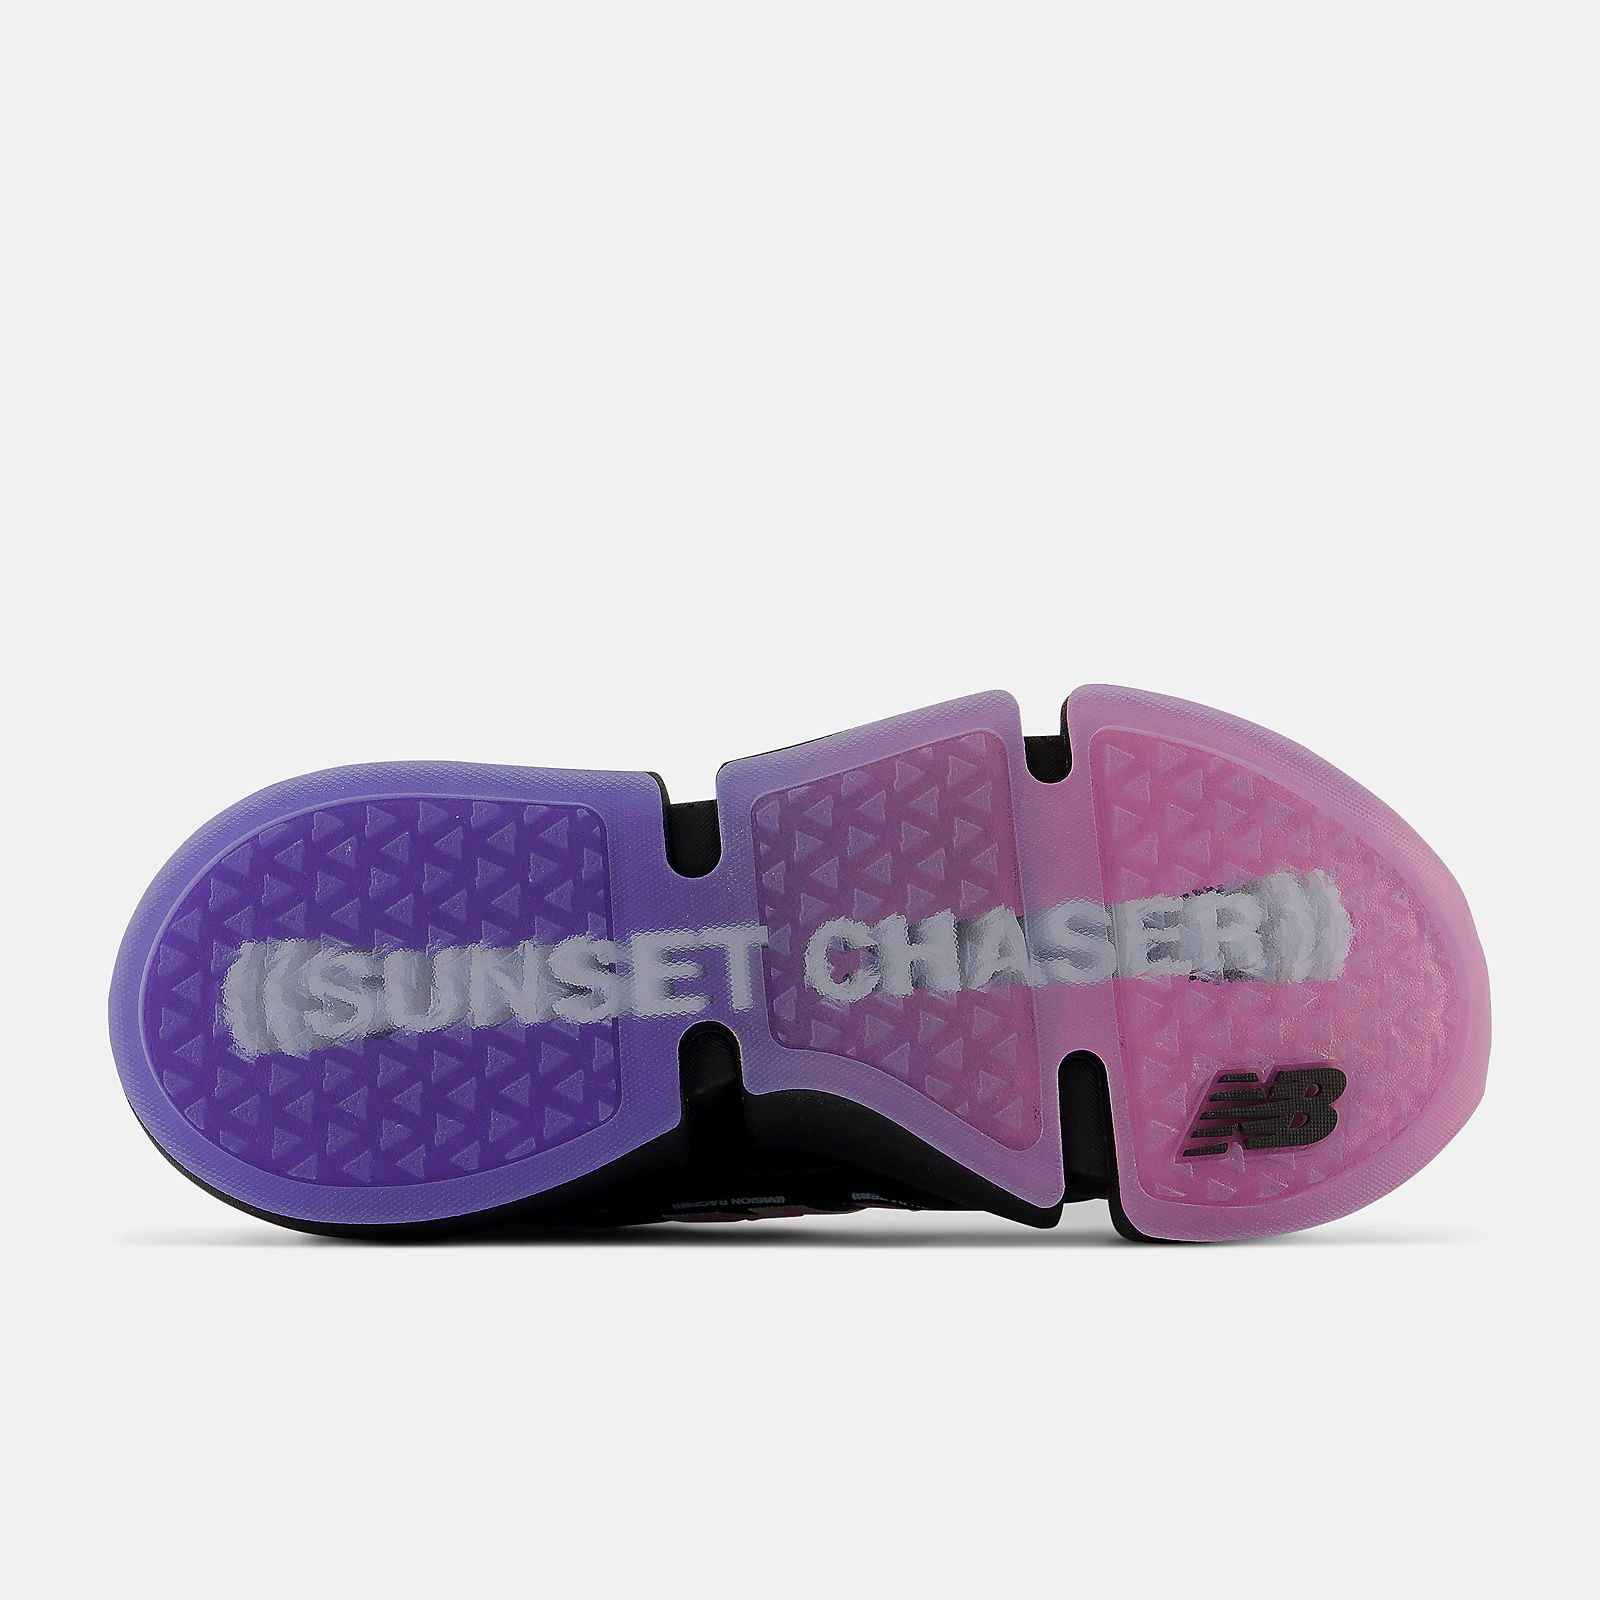 Jaden Smith x New Balance Vision Racer "Sunset Chaser" (Black)